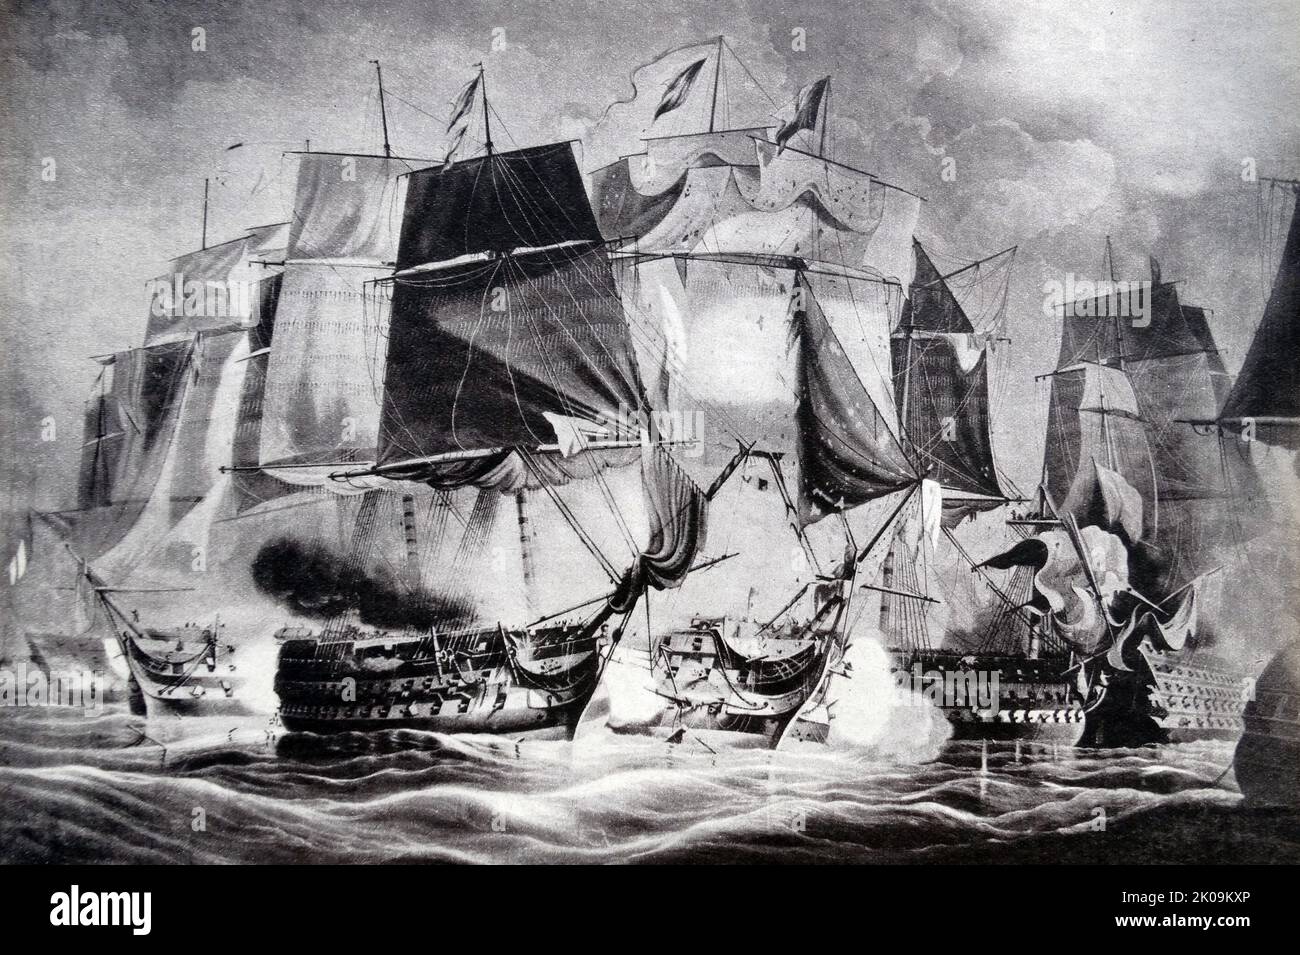 La Battaglia di Trafalgar (21 ottobre 1805) fu un impegno navale tra la Royal Navy britannica e le flotte combinate dei francesi e spagnoli durante la Guerra della terza coalizione (agosto-dicembre 1805) delle Guerre Napoleoniche (1803-1815). Disegno. Come parte dei piani di Napoleone per invadere l'Inghilterra, le flotte francese e spagnola si sono unite per prendere il controllo della Manica ma hanno incontrato la flotta britannica sotto l'ammiraglio Lord Nelson. La battaglia feroce che ne seguì portò alla perdita di 22 navi alleate, mentre gli inglesi non ne persero nessuna. Foto Stock